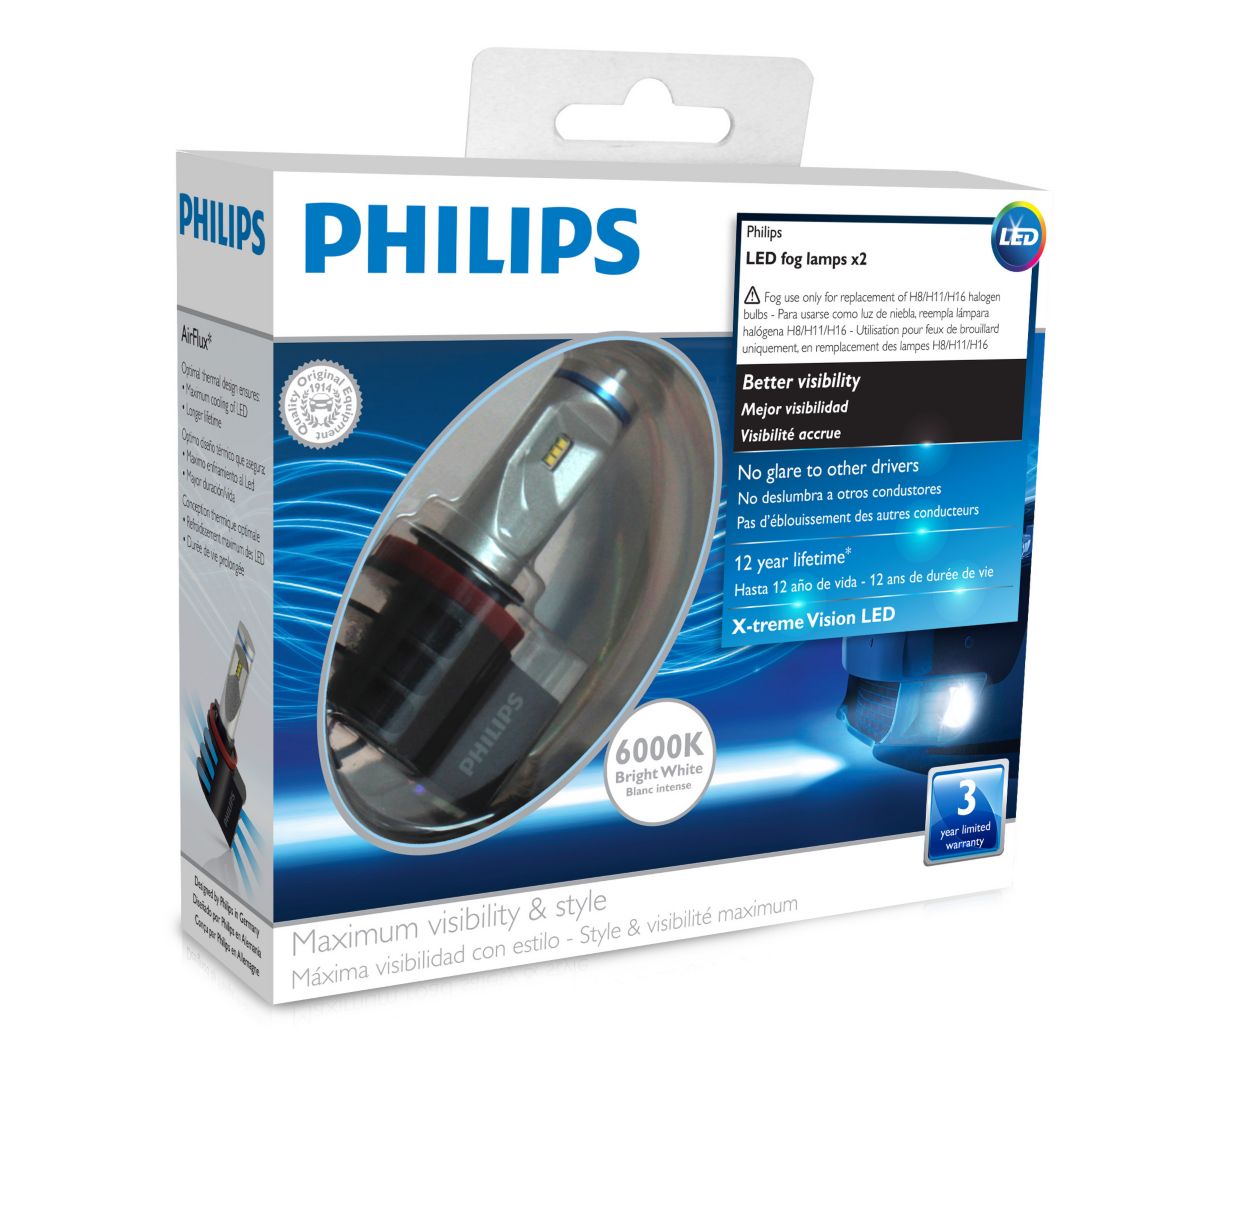 Светодиодные филипс купить. Philips 12834unix2 x-treme Ultinon led. Philips led Fog h8/h11/h16. Philips led Fog h8. Светодиодные лампы Филипс h11.